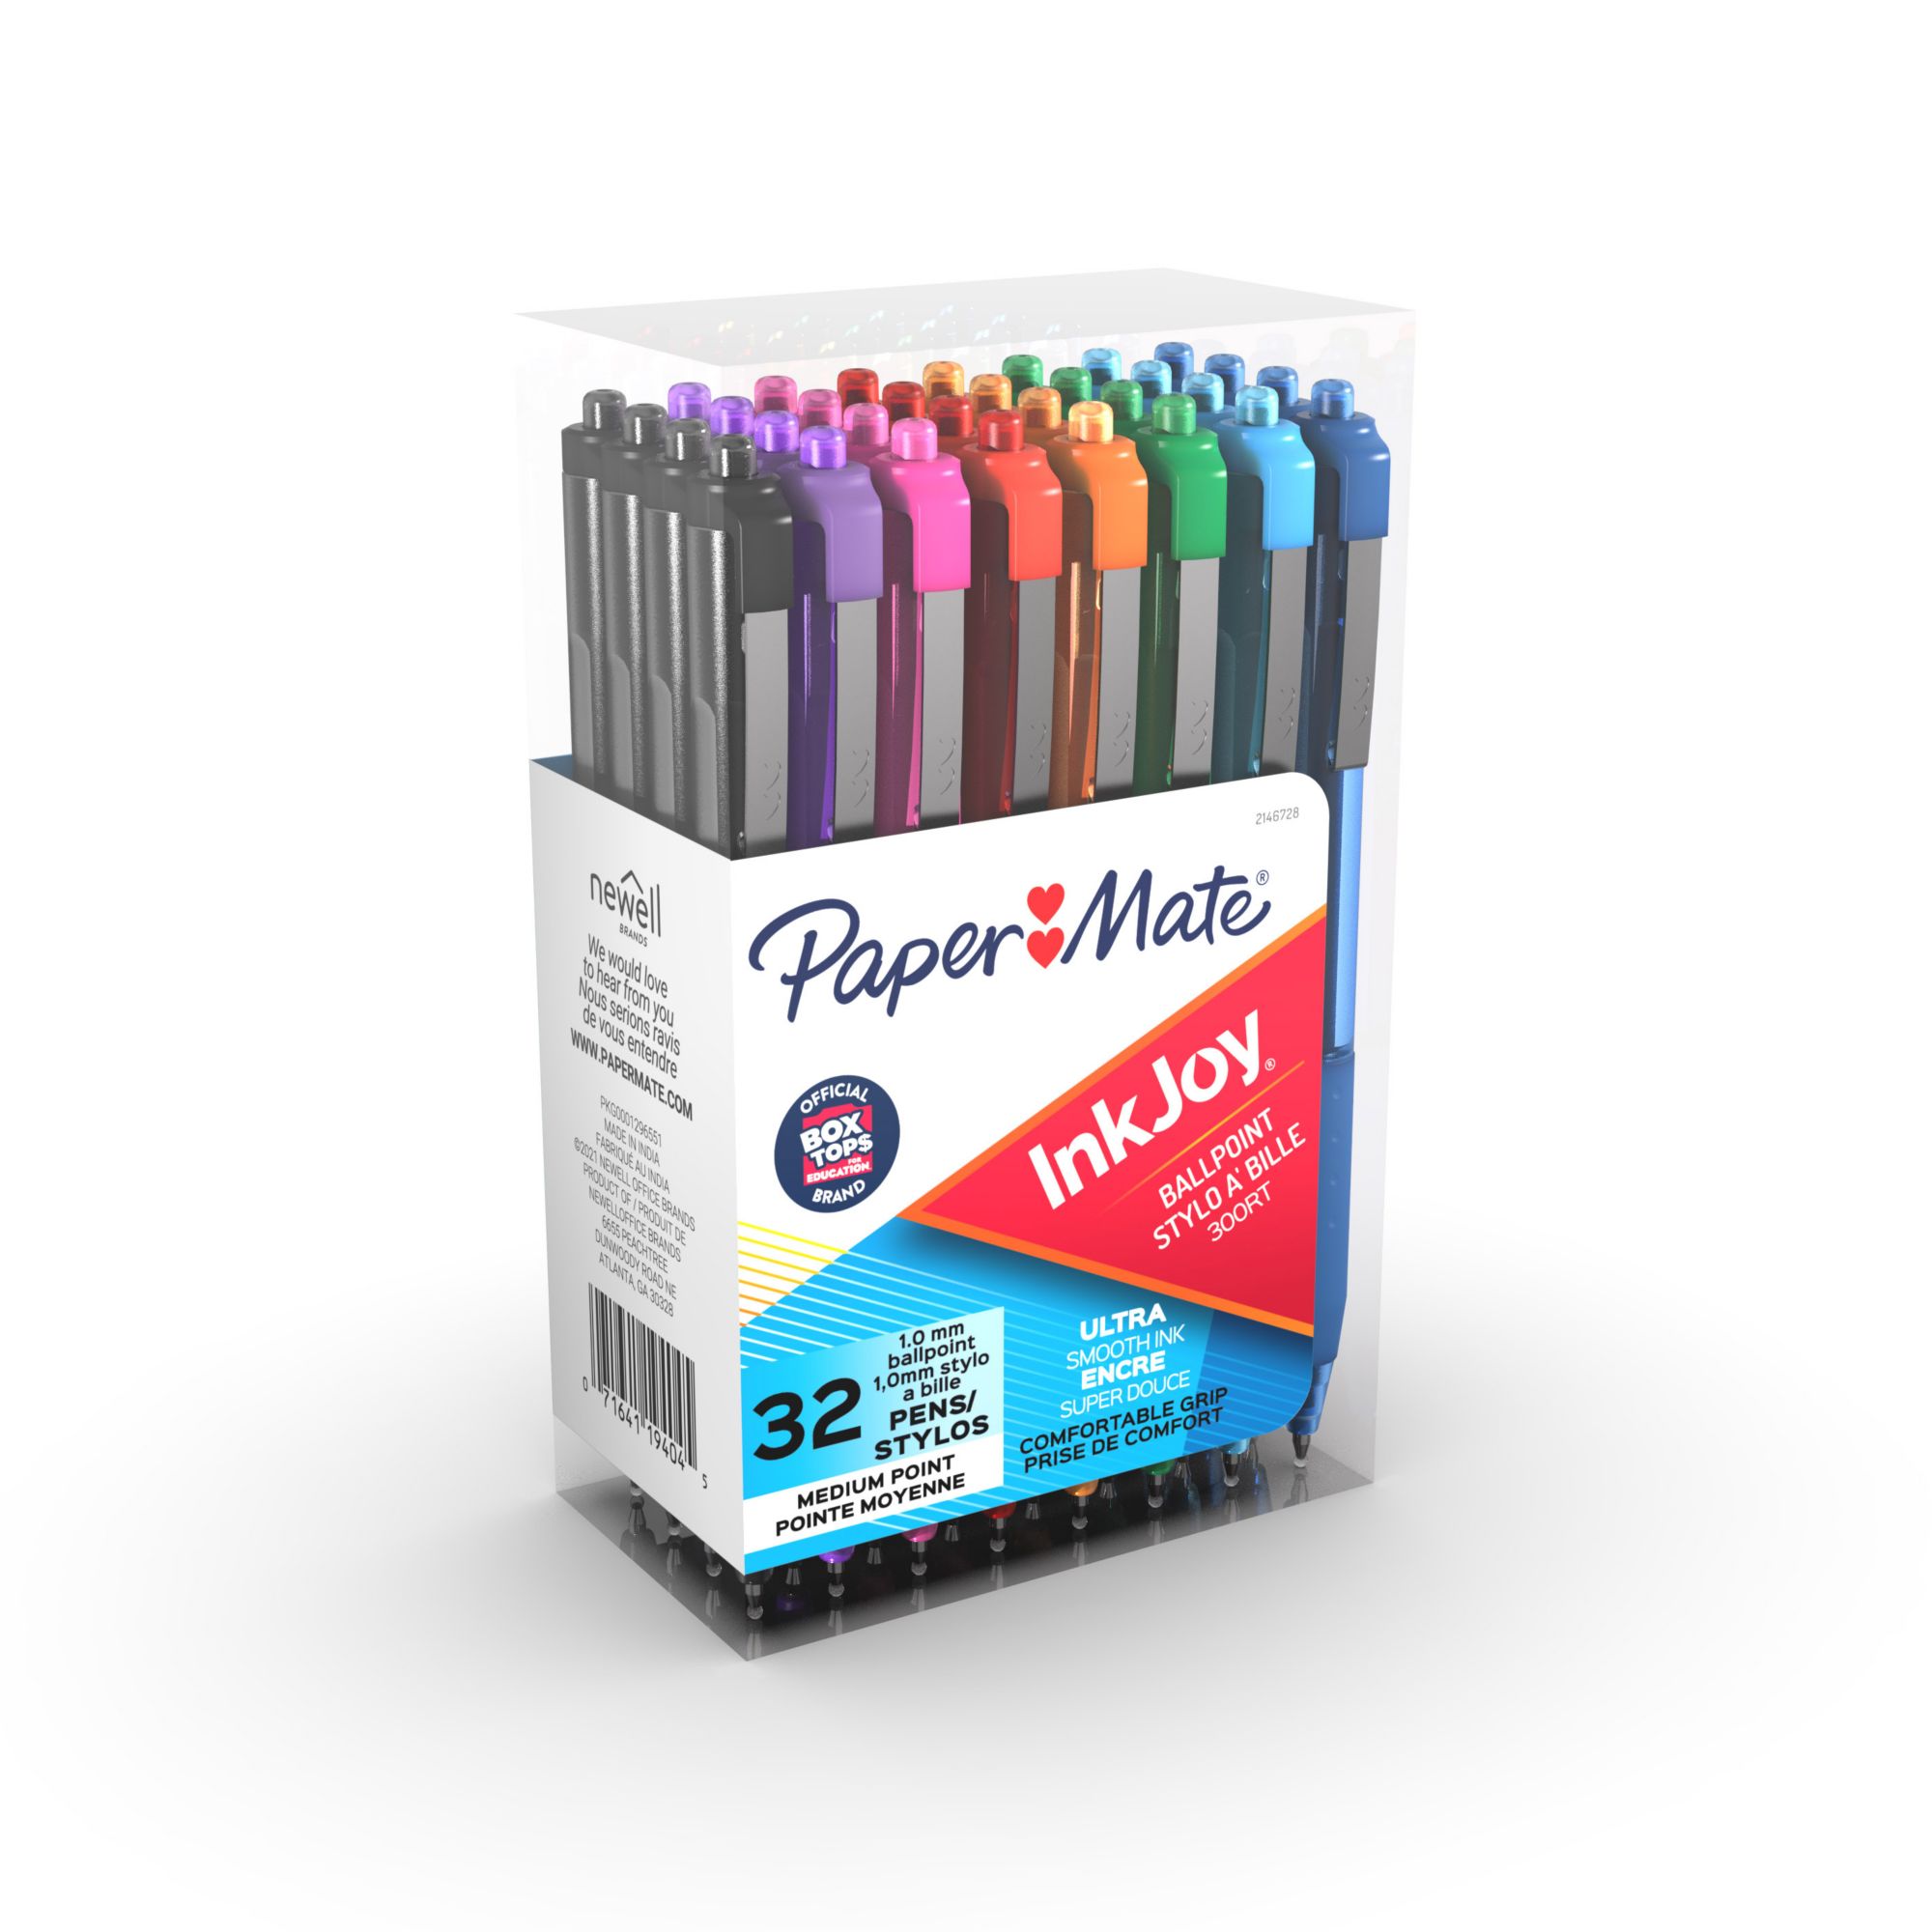 Buy Papermate Pens Online – Ryman